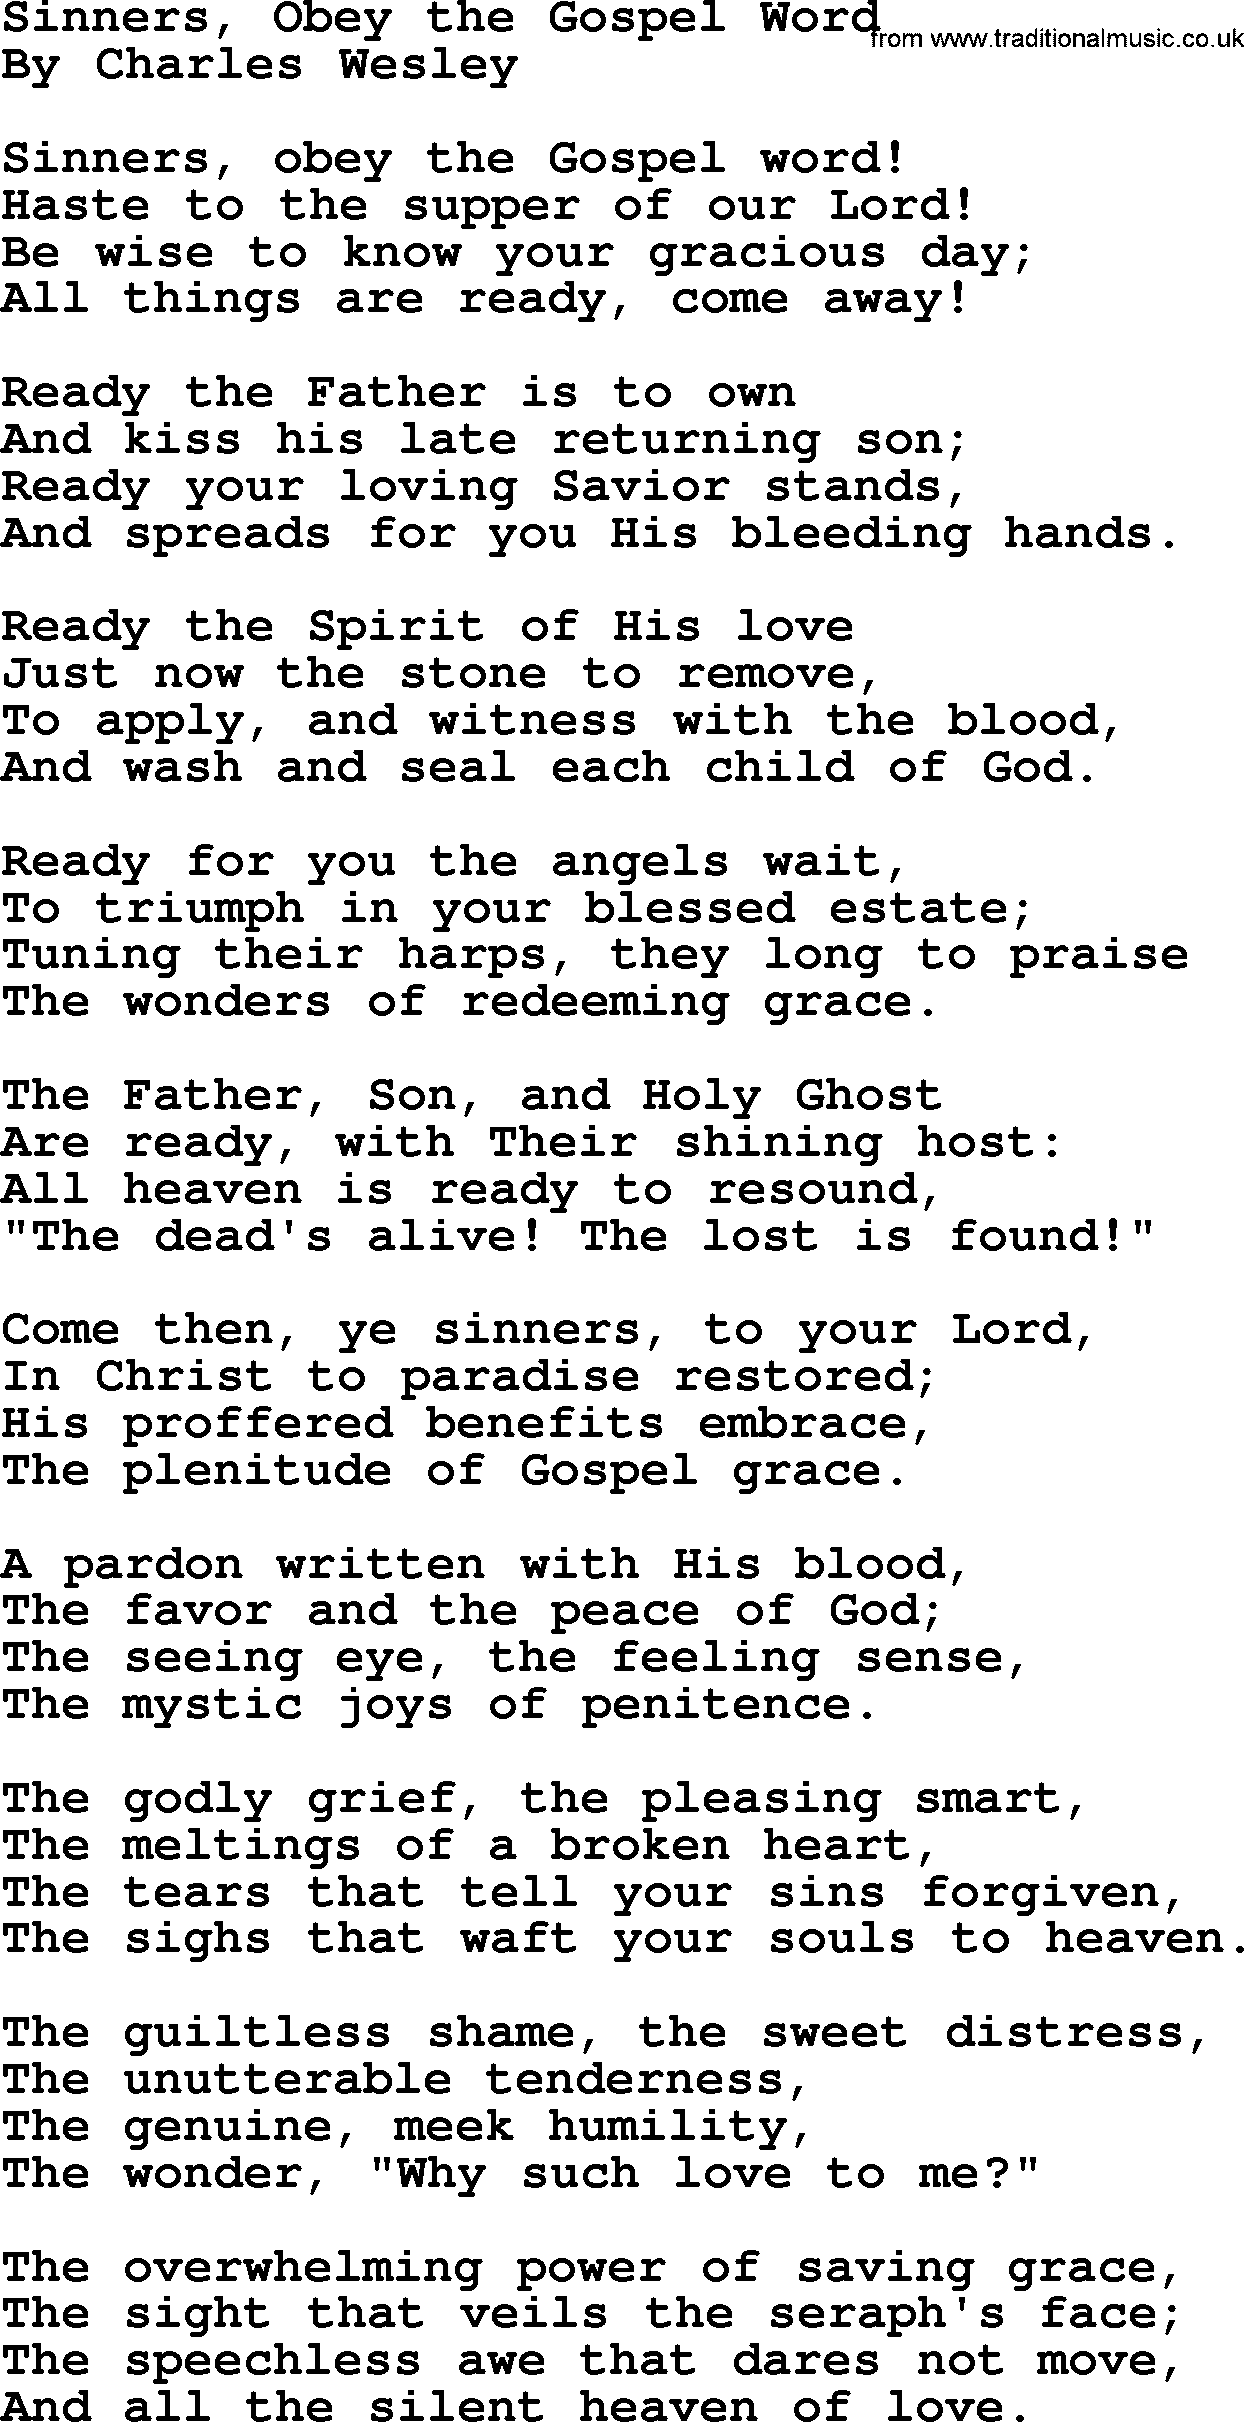 Charles Wesley hymn: Sinners, Obey the Gospel Word, lyrics